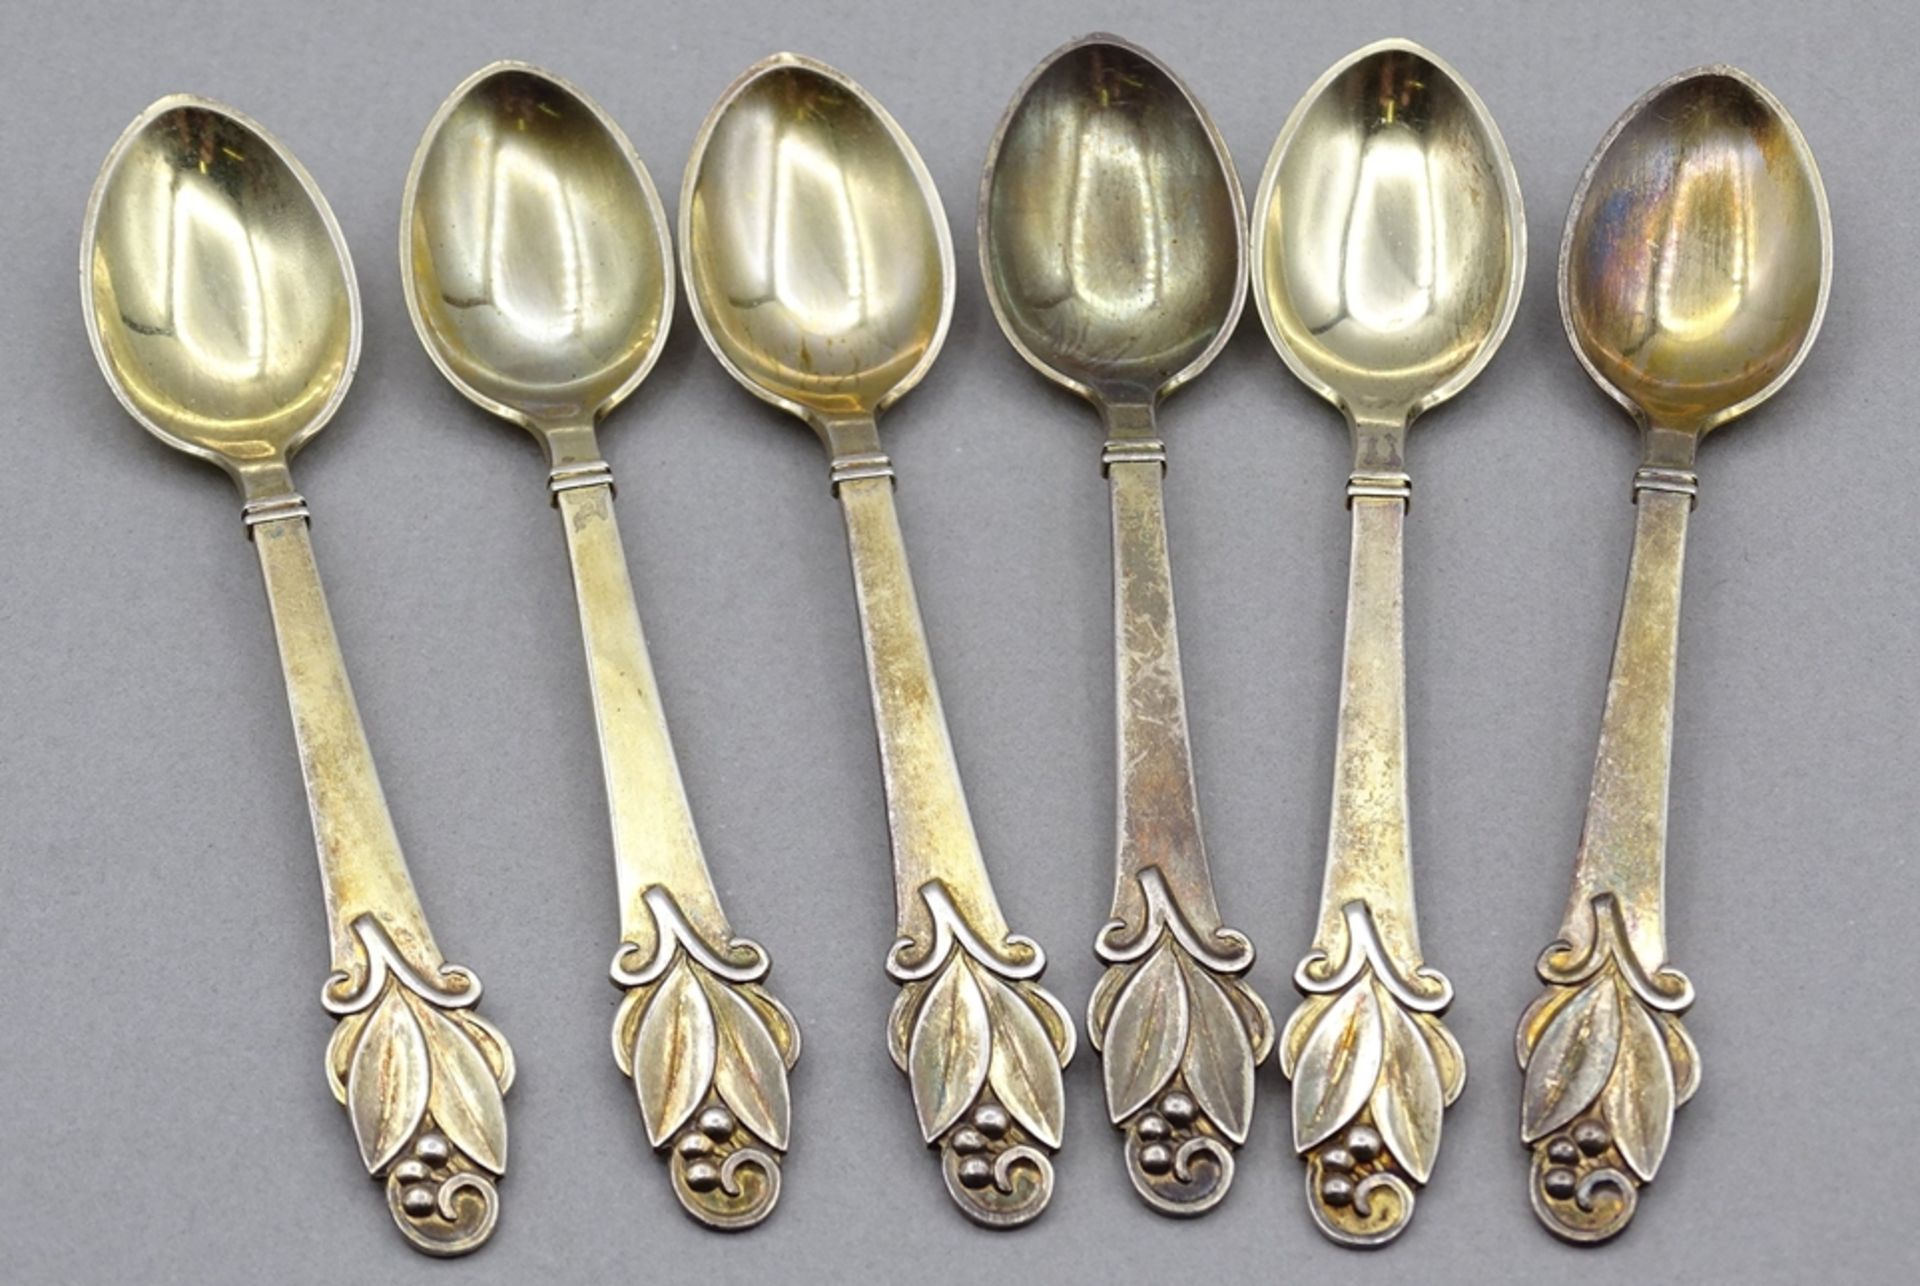 6 Moccalöffel, Copenhagen (19) 38, Silber - vergoldet, L. 9,5cm, zus. 50,4g. Alters- und Gebrauchss